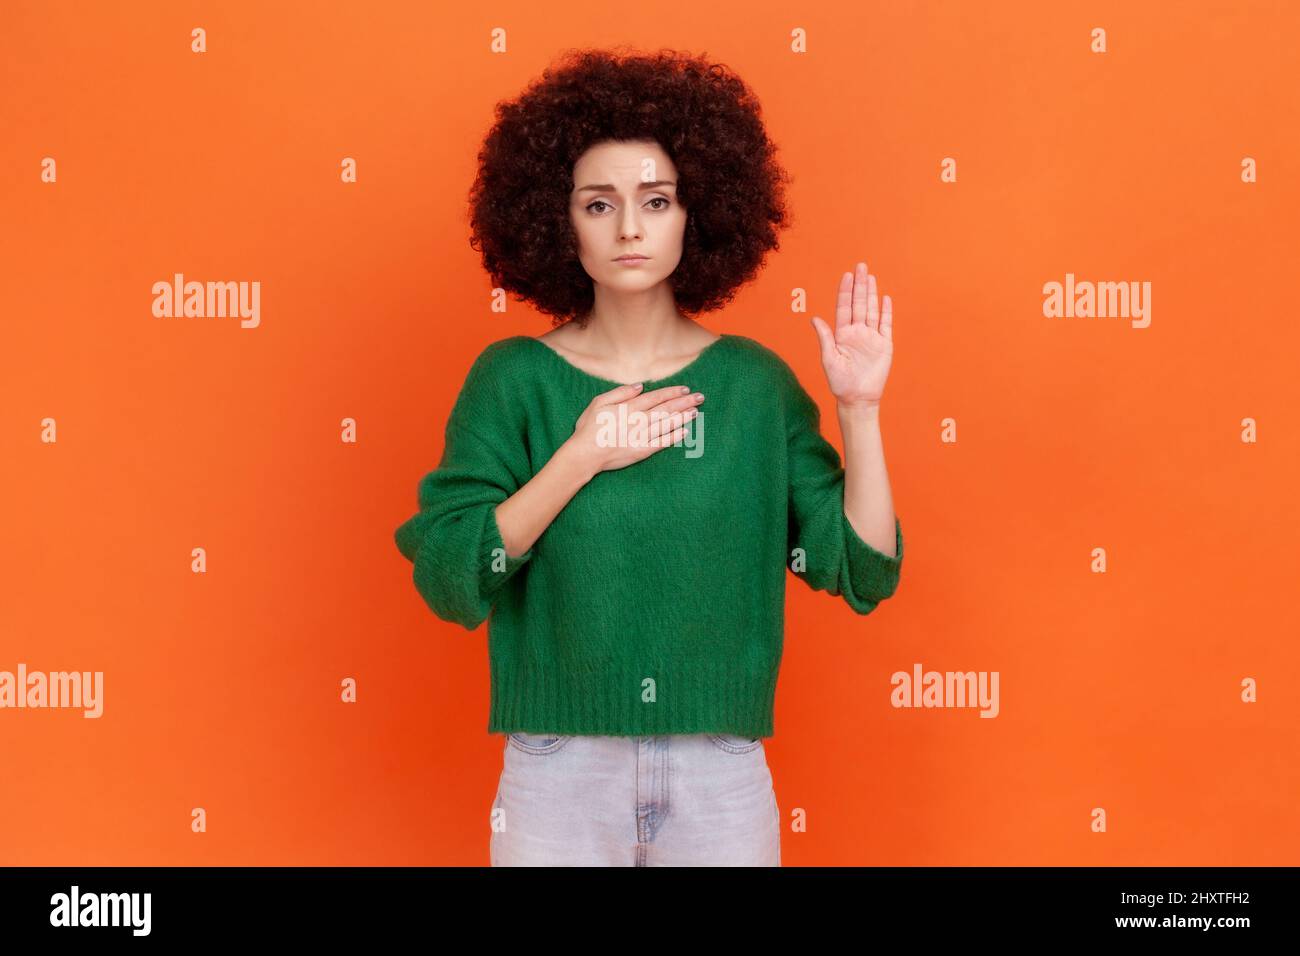 Ich verspreche. Seriöse Frau mit Afro-Frisur trägt grünen Pullover stehen Hand heben und schwören, Treue schwören, Treue versprechen. Innenaufnahme des Studios isoliert auf orangefarbenem Hintergrund. Stockfoto